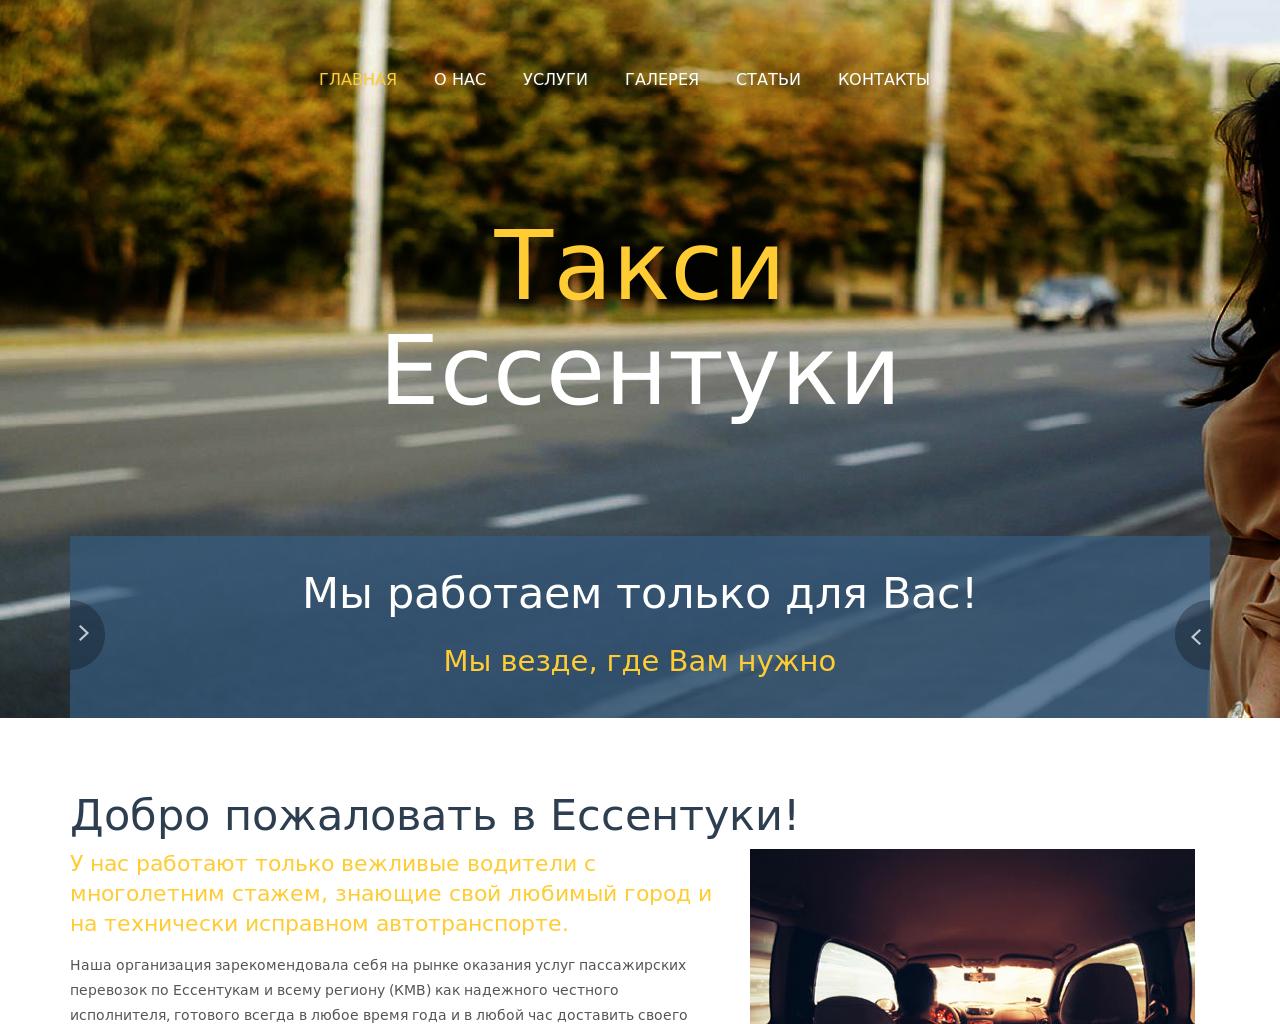 Изображение сайта taxi-26.ru в разрешении 1280x1024